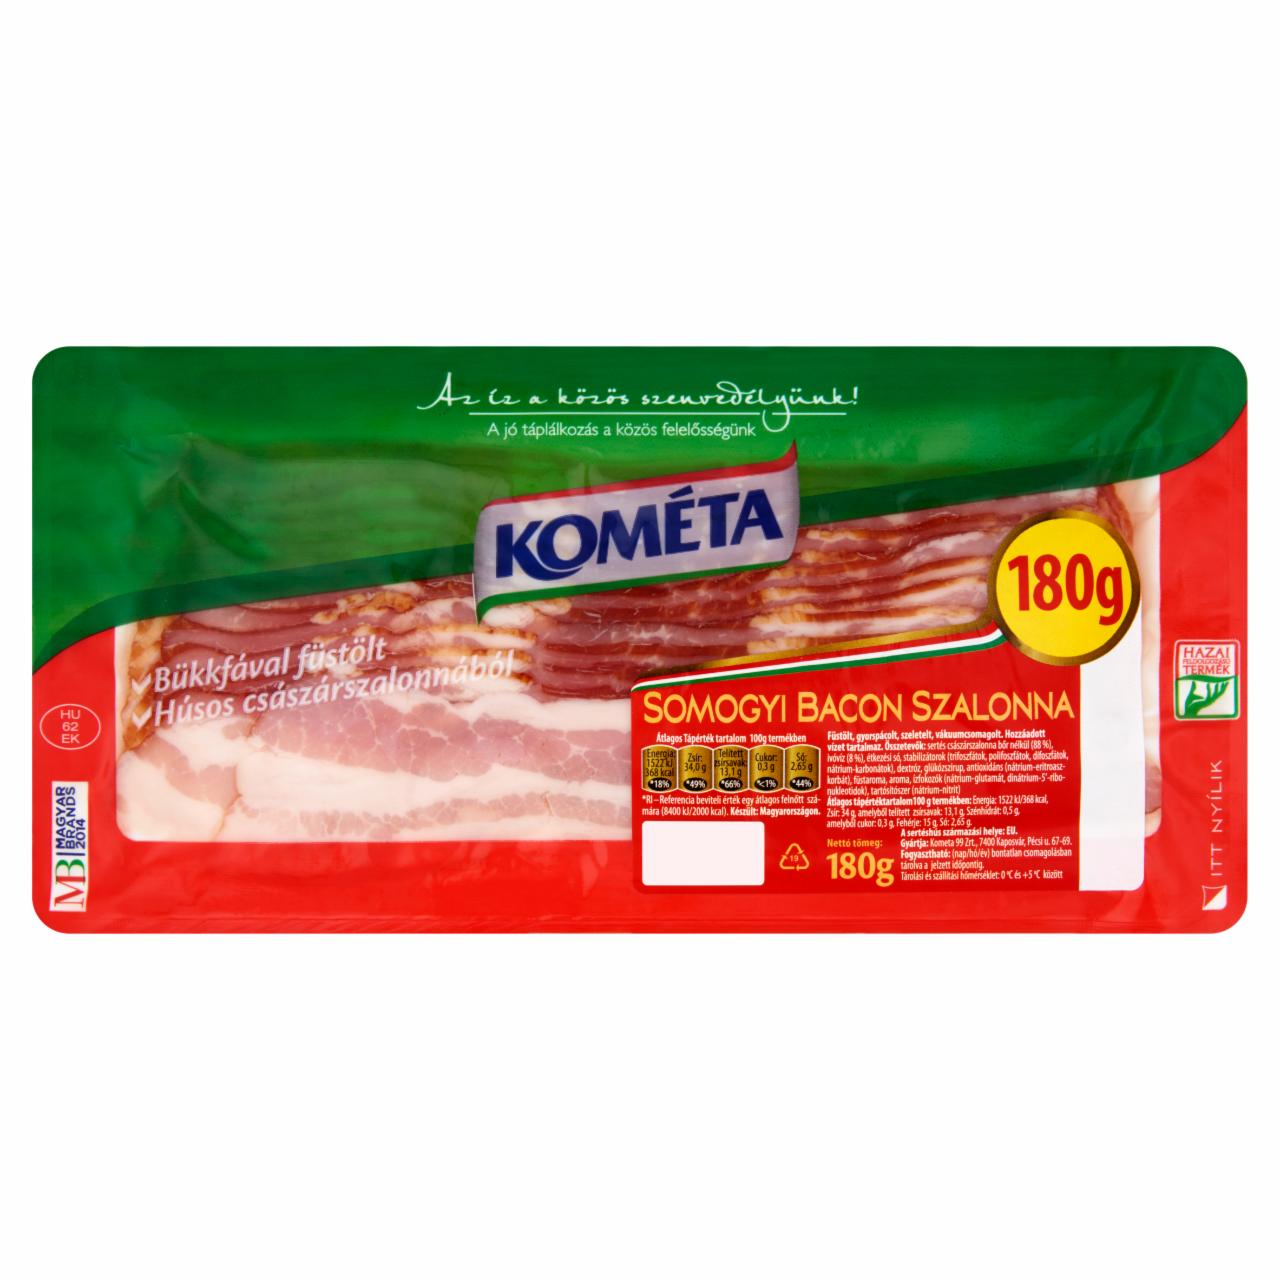 Képek - Kométa somogyi bacon szalonna 180 g